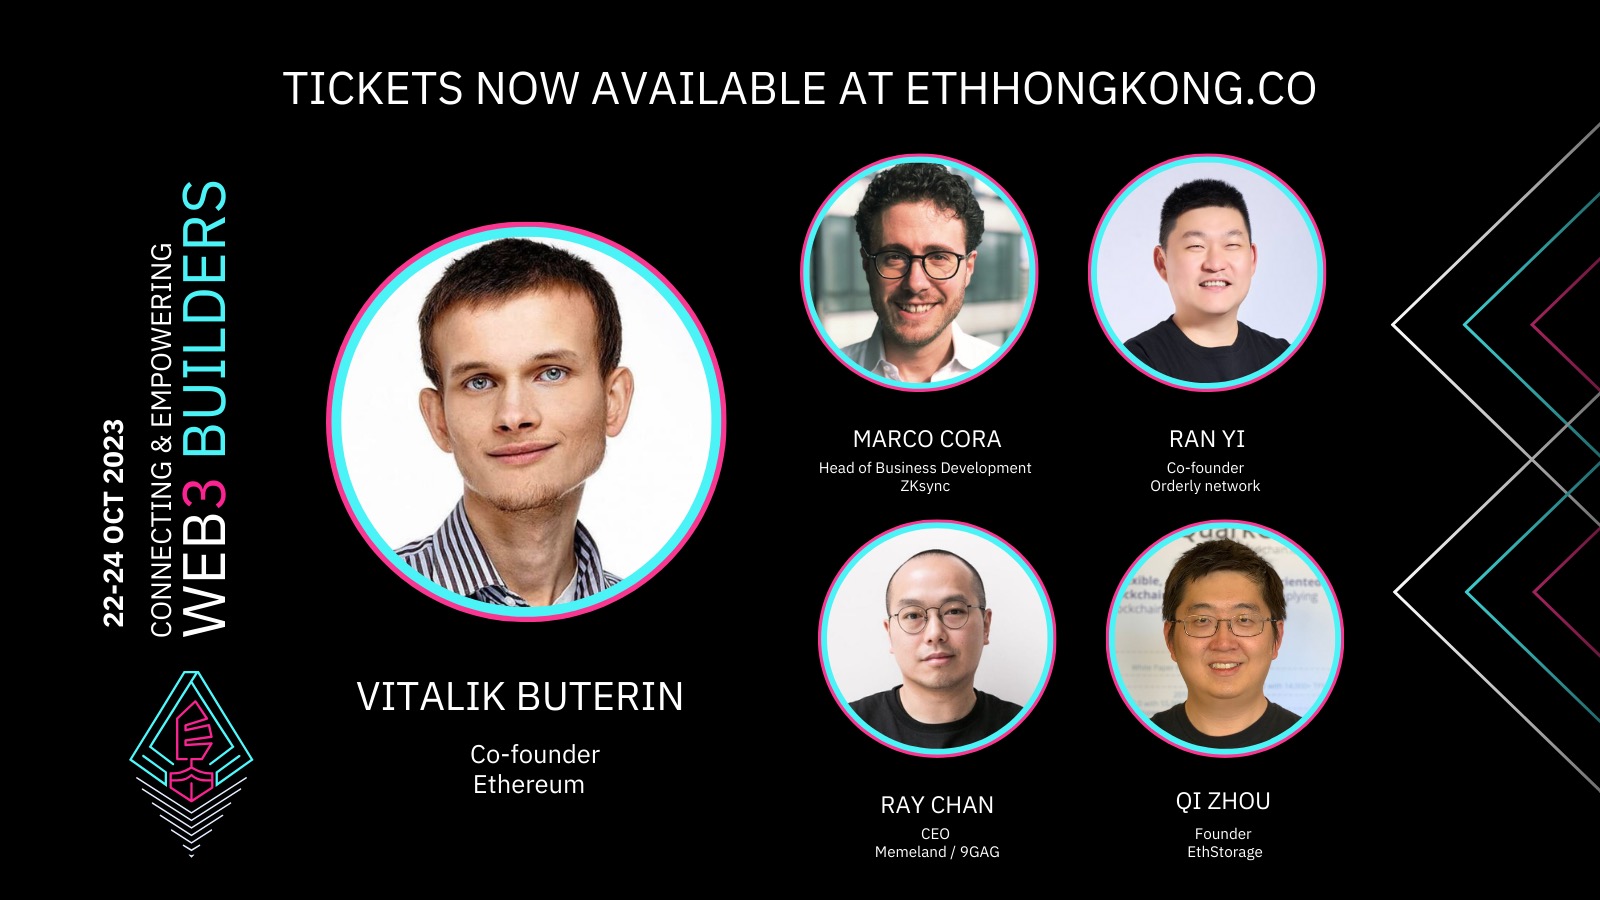 首届以太坊香港活动即将来袭，Vitalik Buterin等重磅嘉宾將亮相ETH Hong Kong